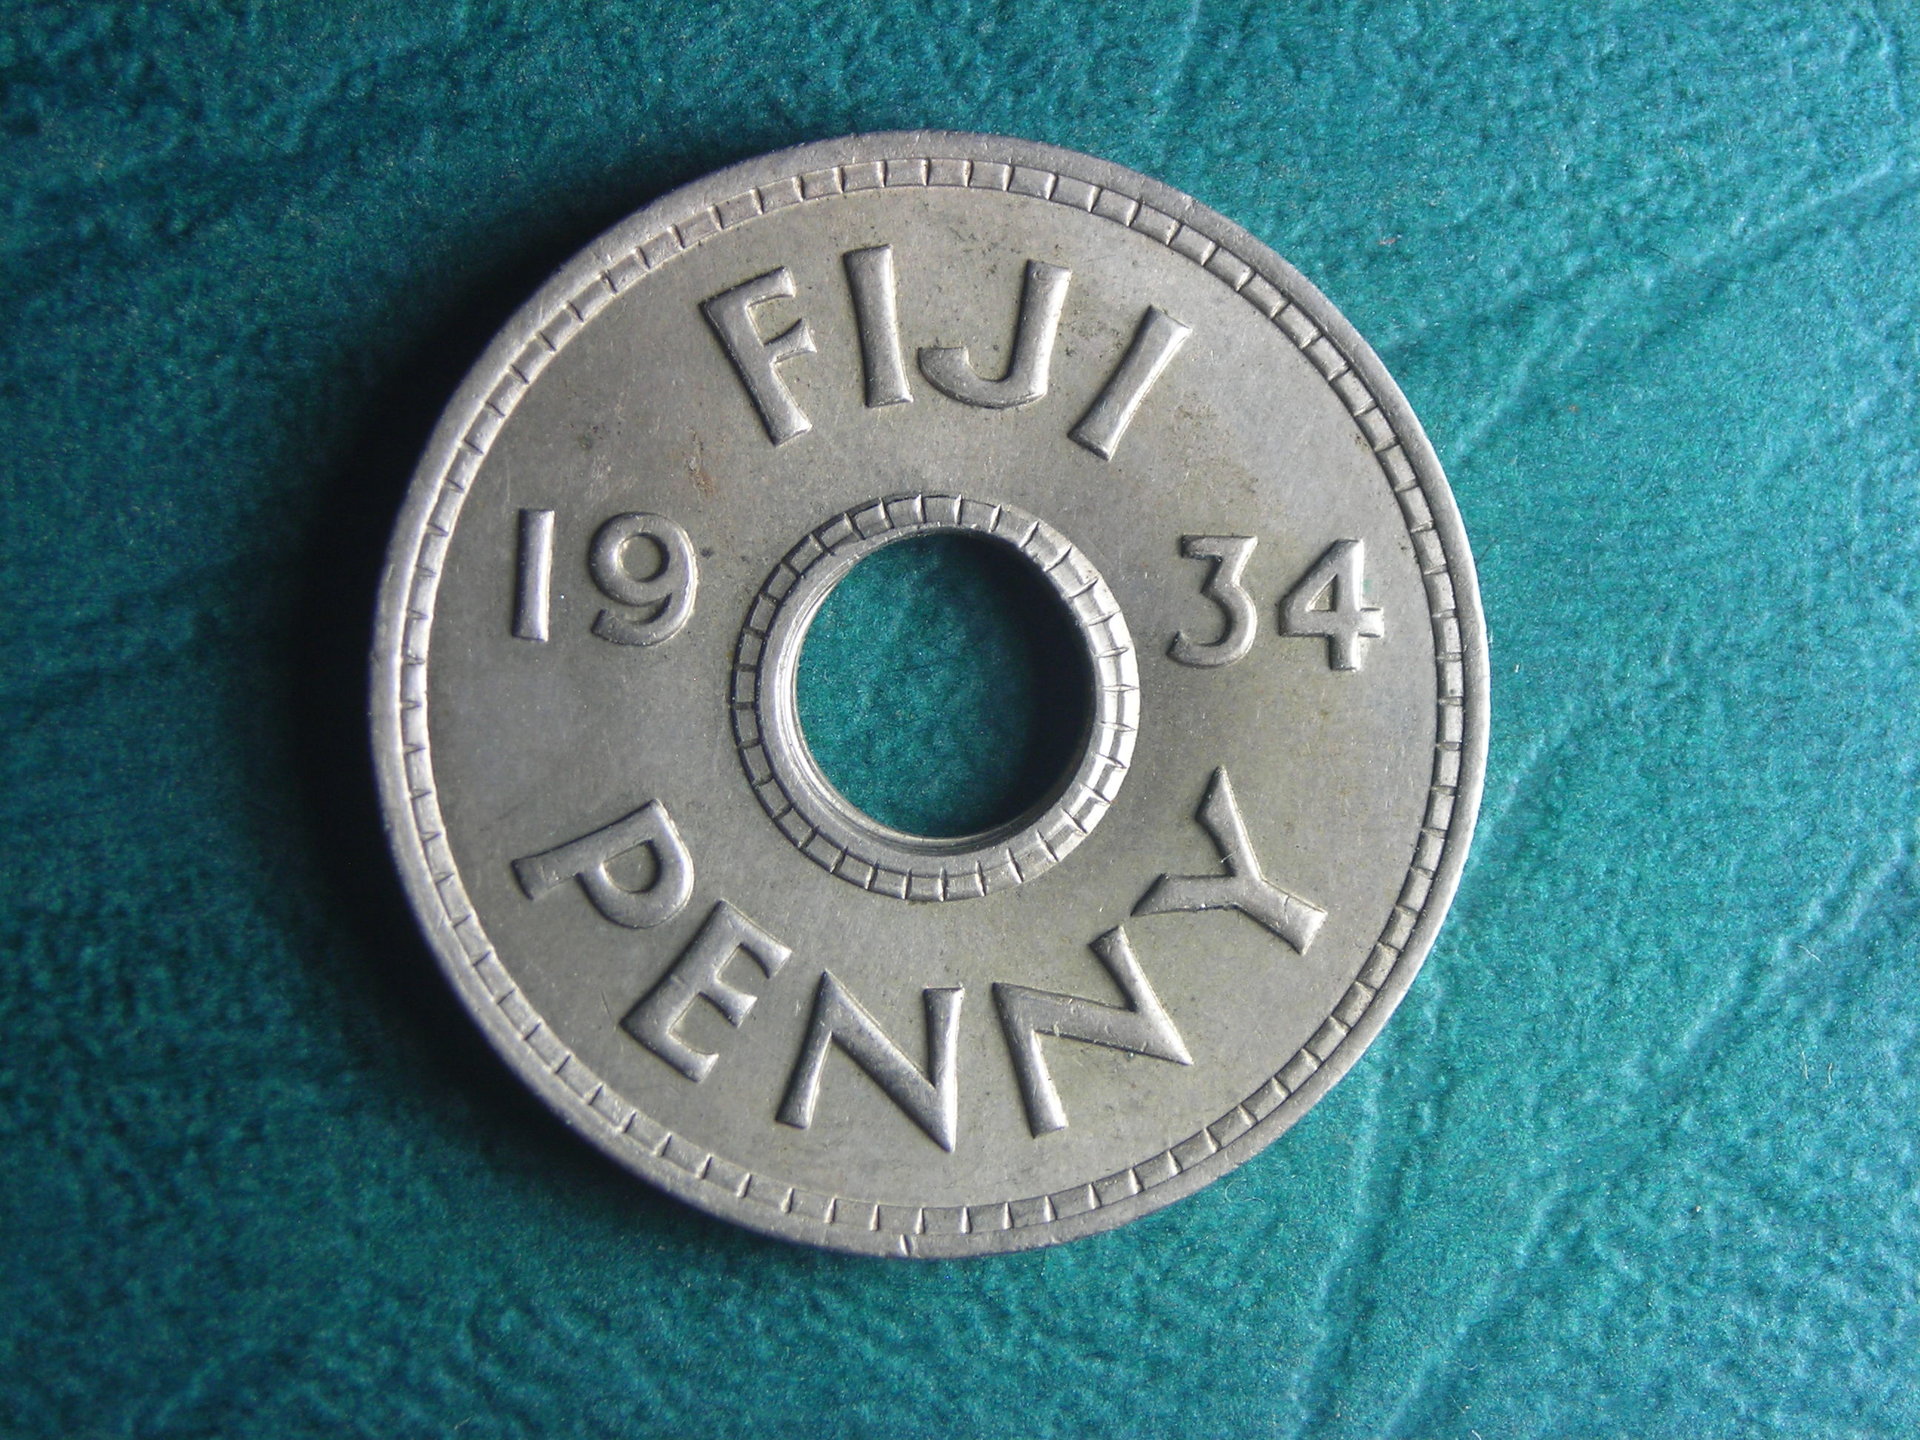 1934 Fiji 1 p rev.JPG